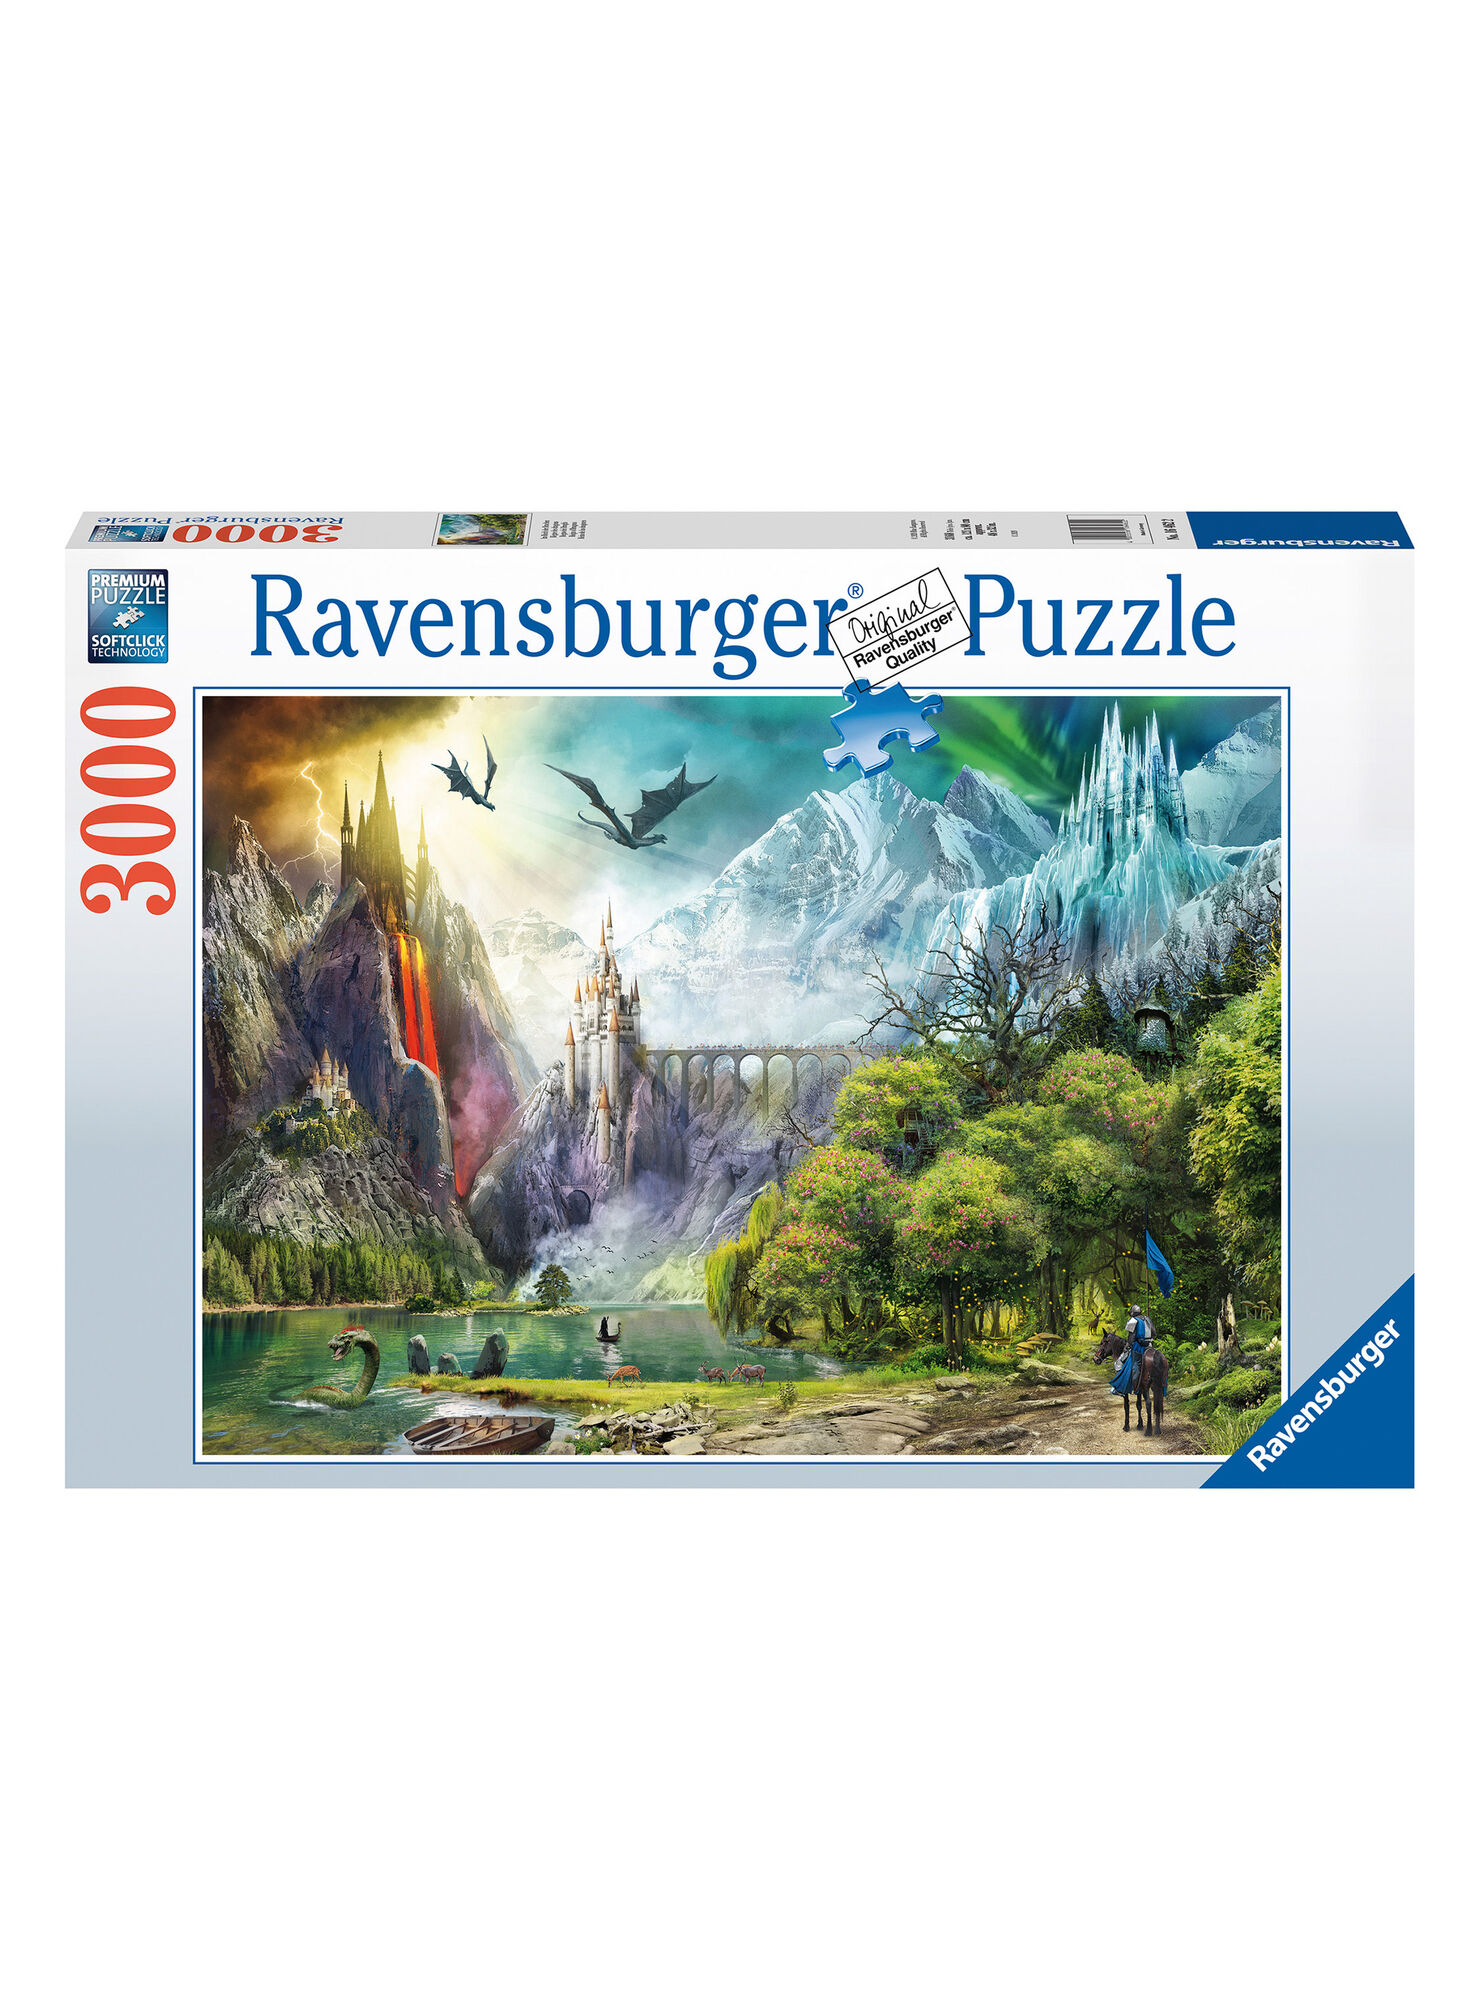 Ravensburger Puzzle Reino de Dragones 3000 Piezas Caramba - Juegos Mesa Paris.cl